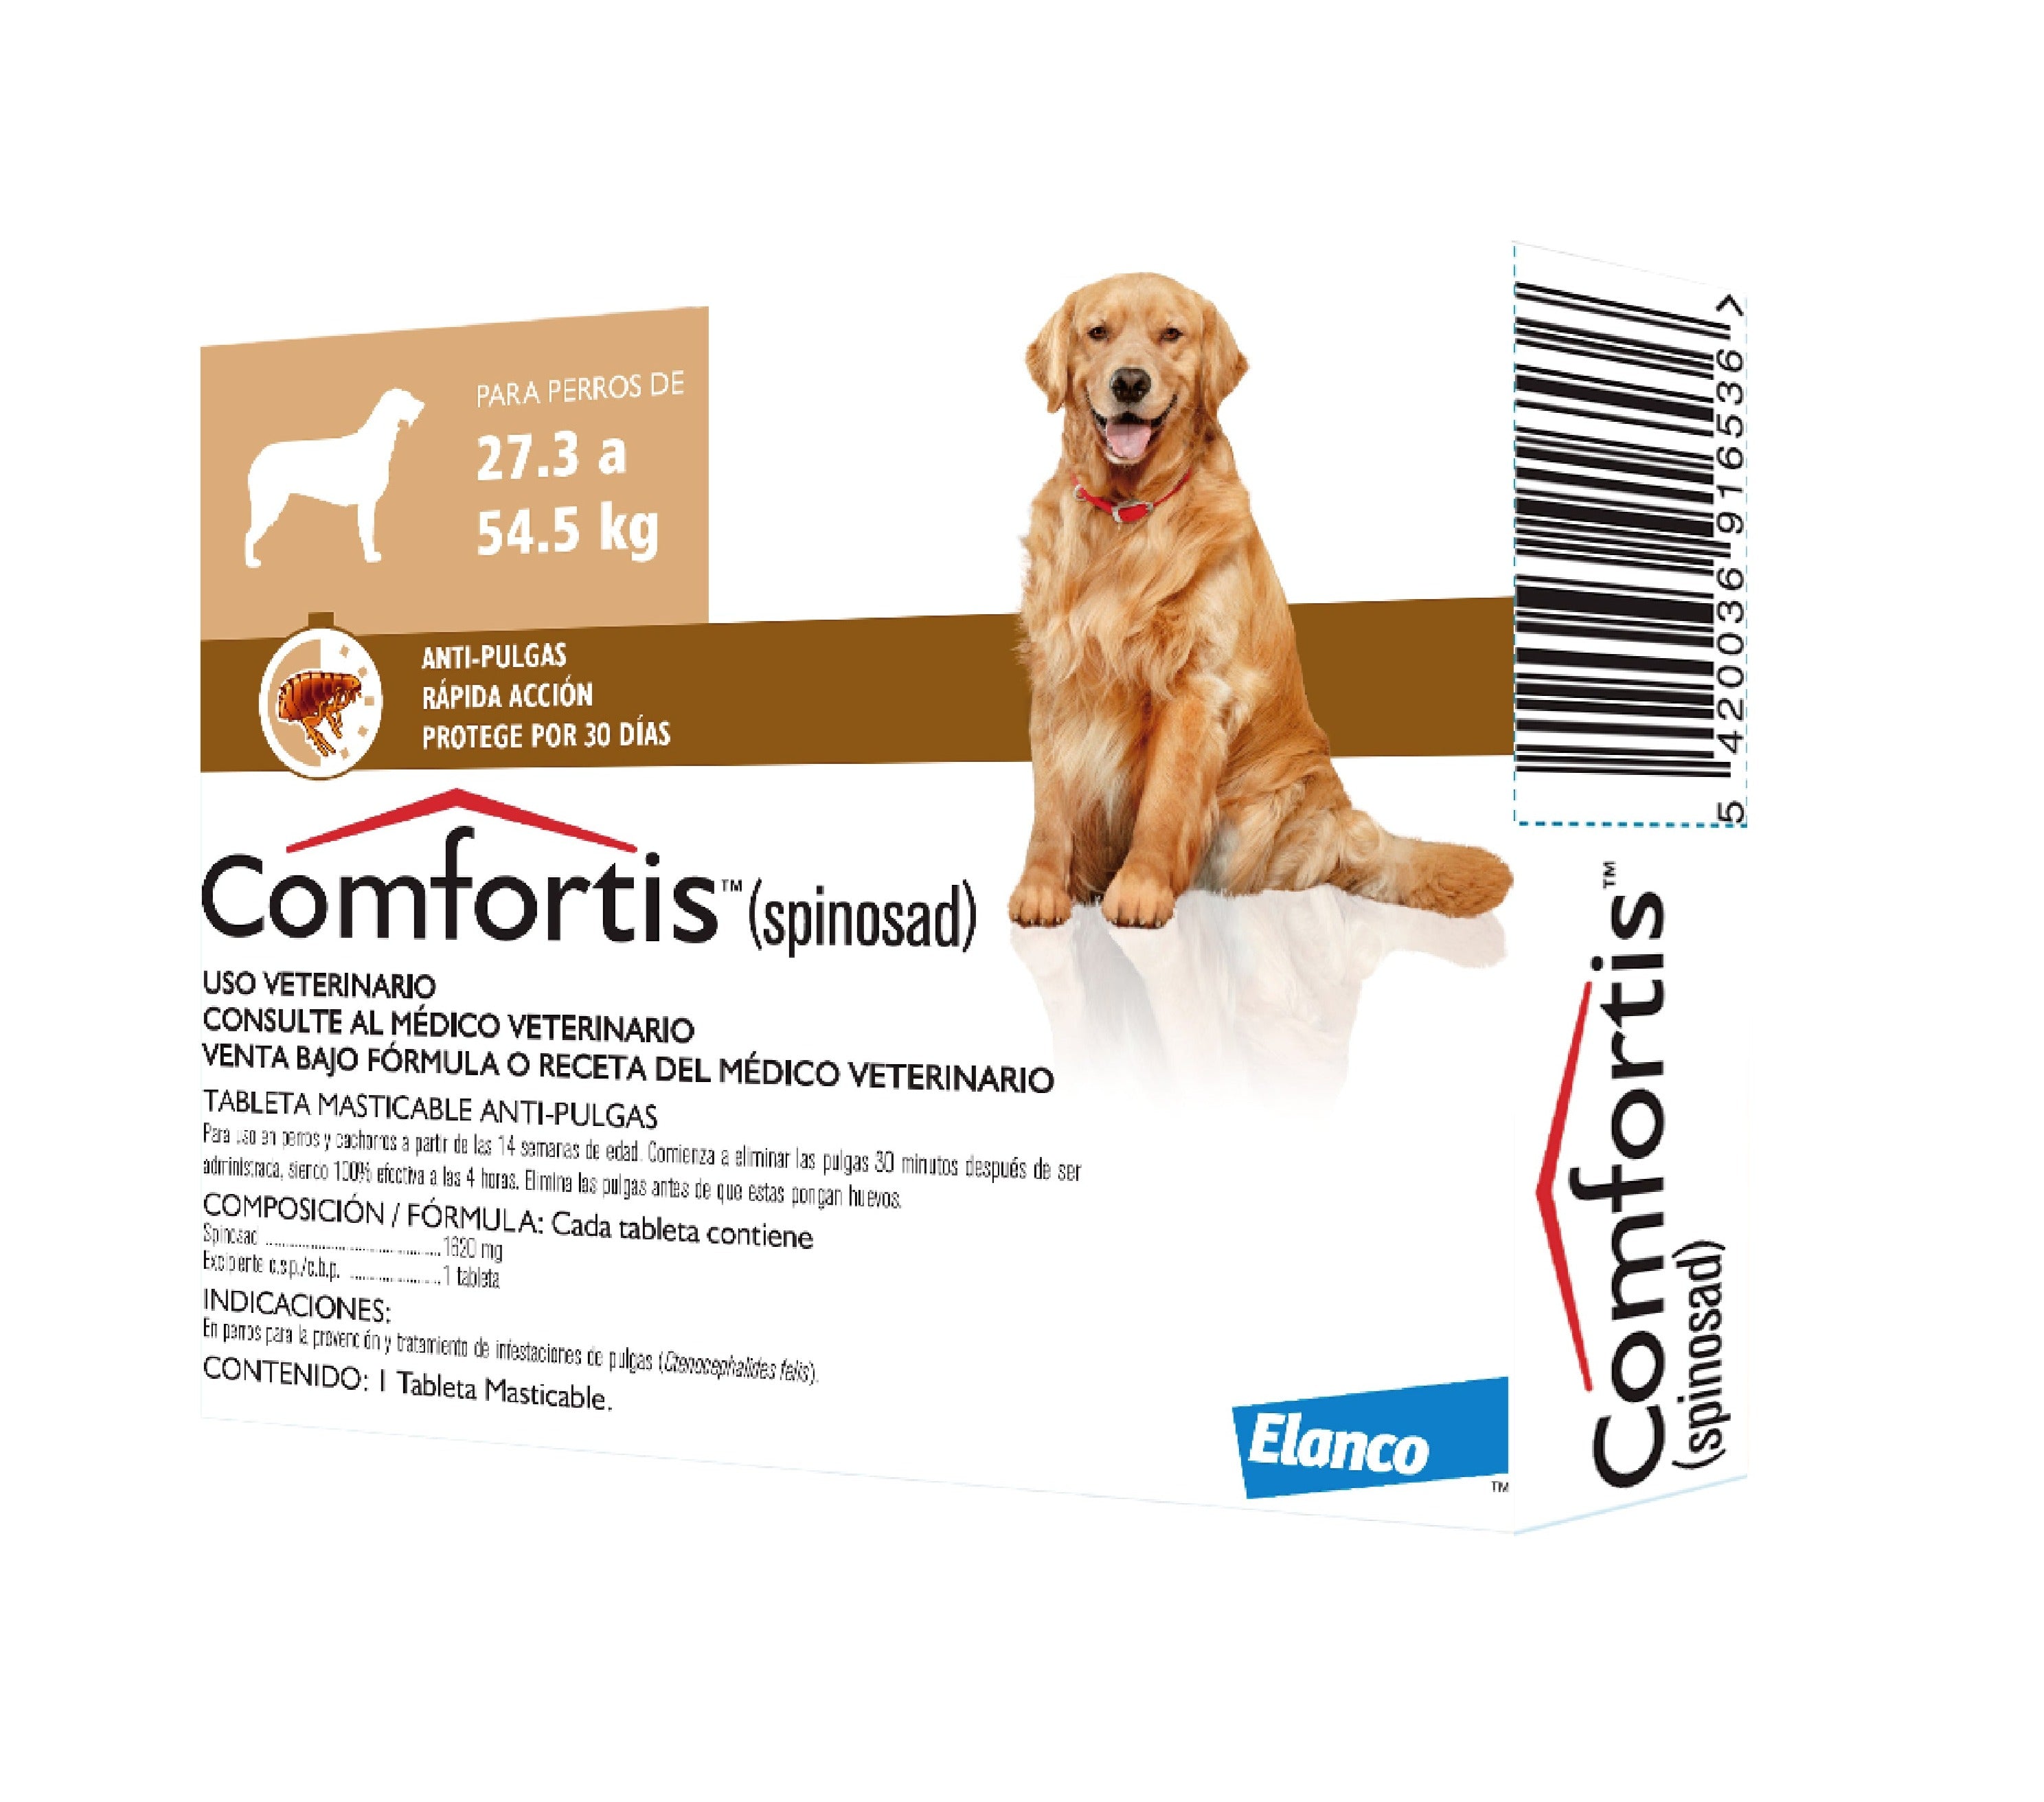 comfortis-tableta-antipulgas-para-perros-de-27-3-a-54-5-kilos